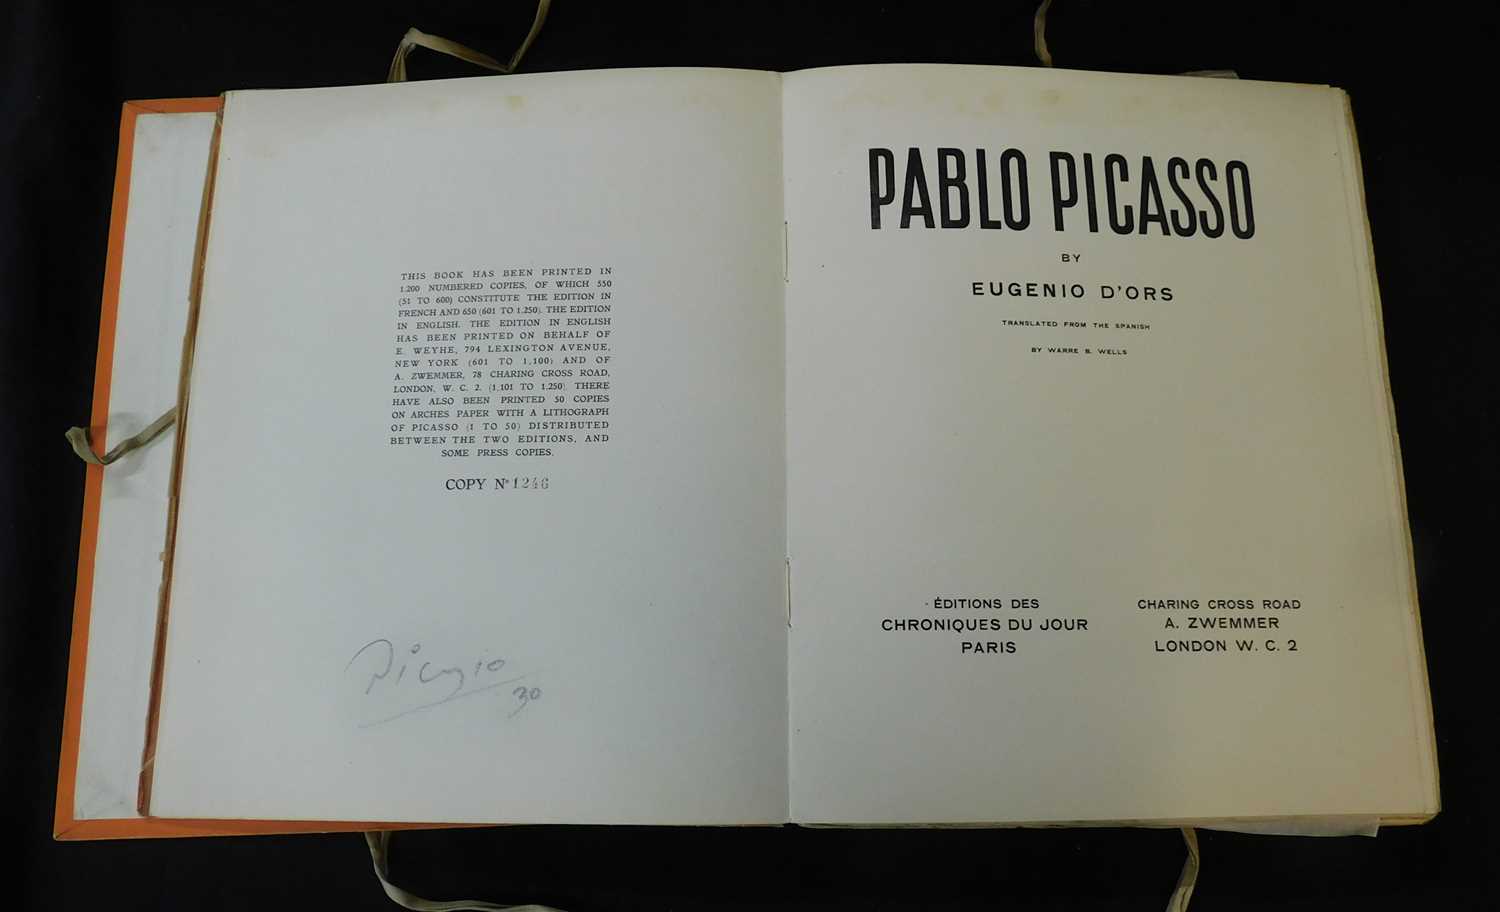 EUGENIO D'ORS: PABLO PICASSO, trans Warre B Wells, Paris, Editions des Chroniques du Jour, London, A - Image 3 of 6